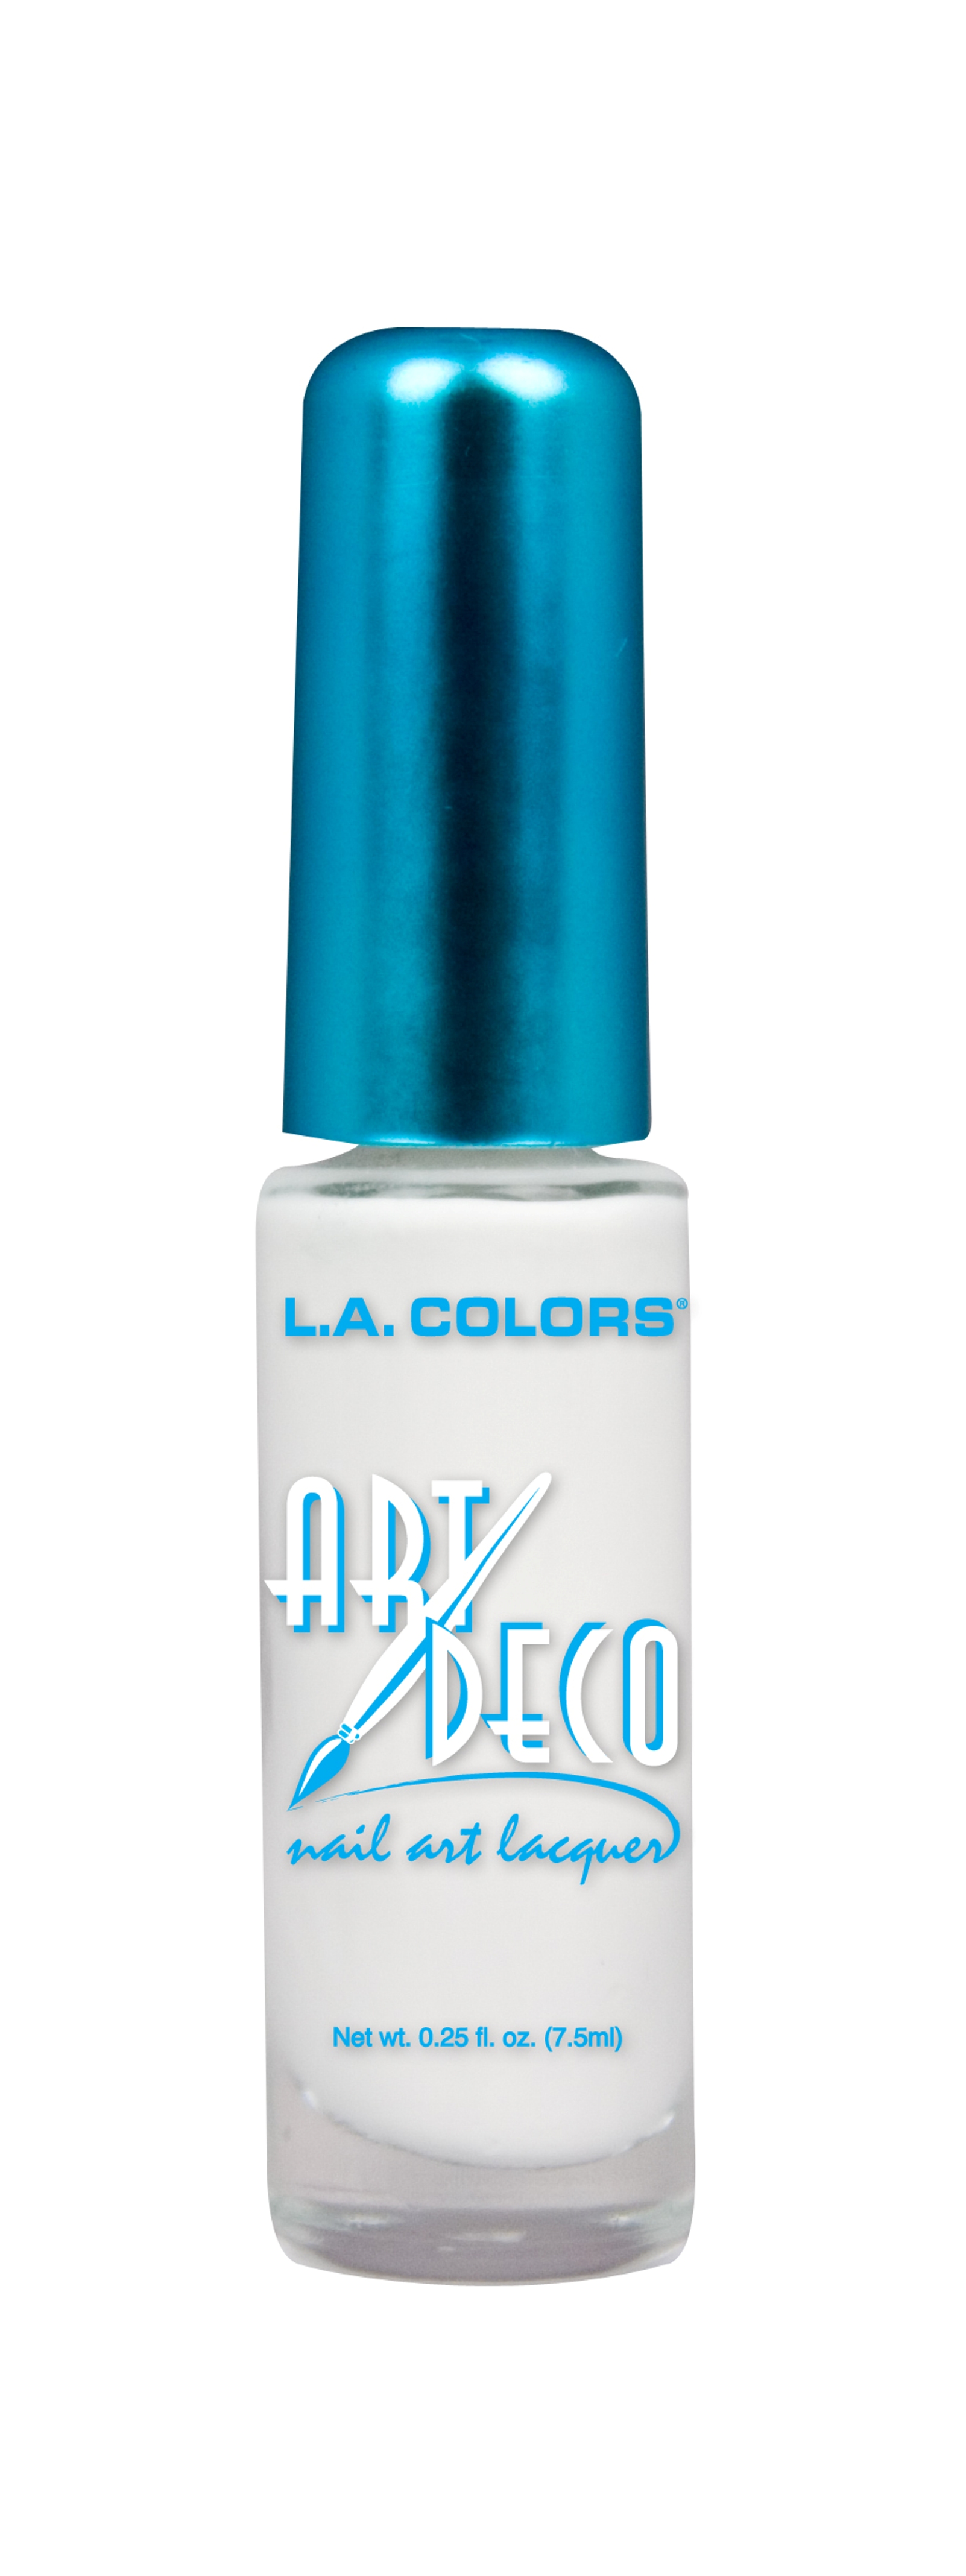 L.A. Colors Art Deco Nail Art 901 White  0.25 fl oz  7.5 ml